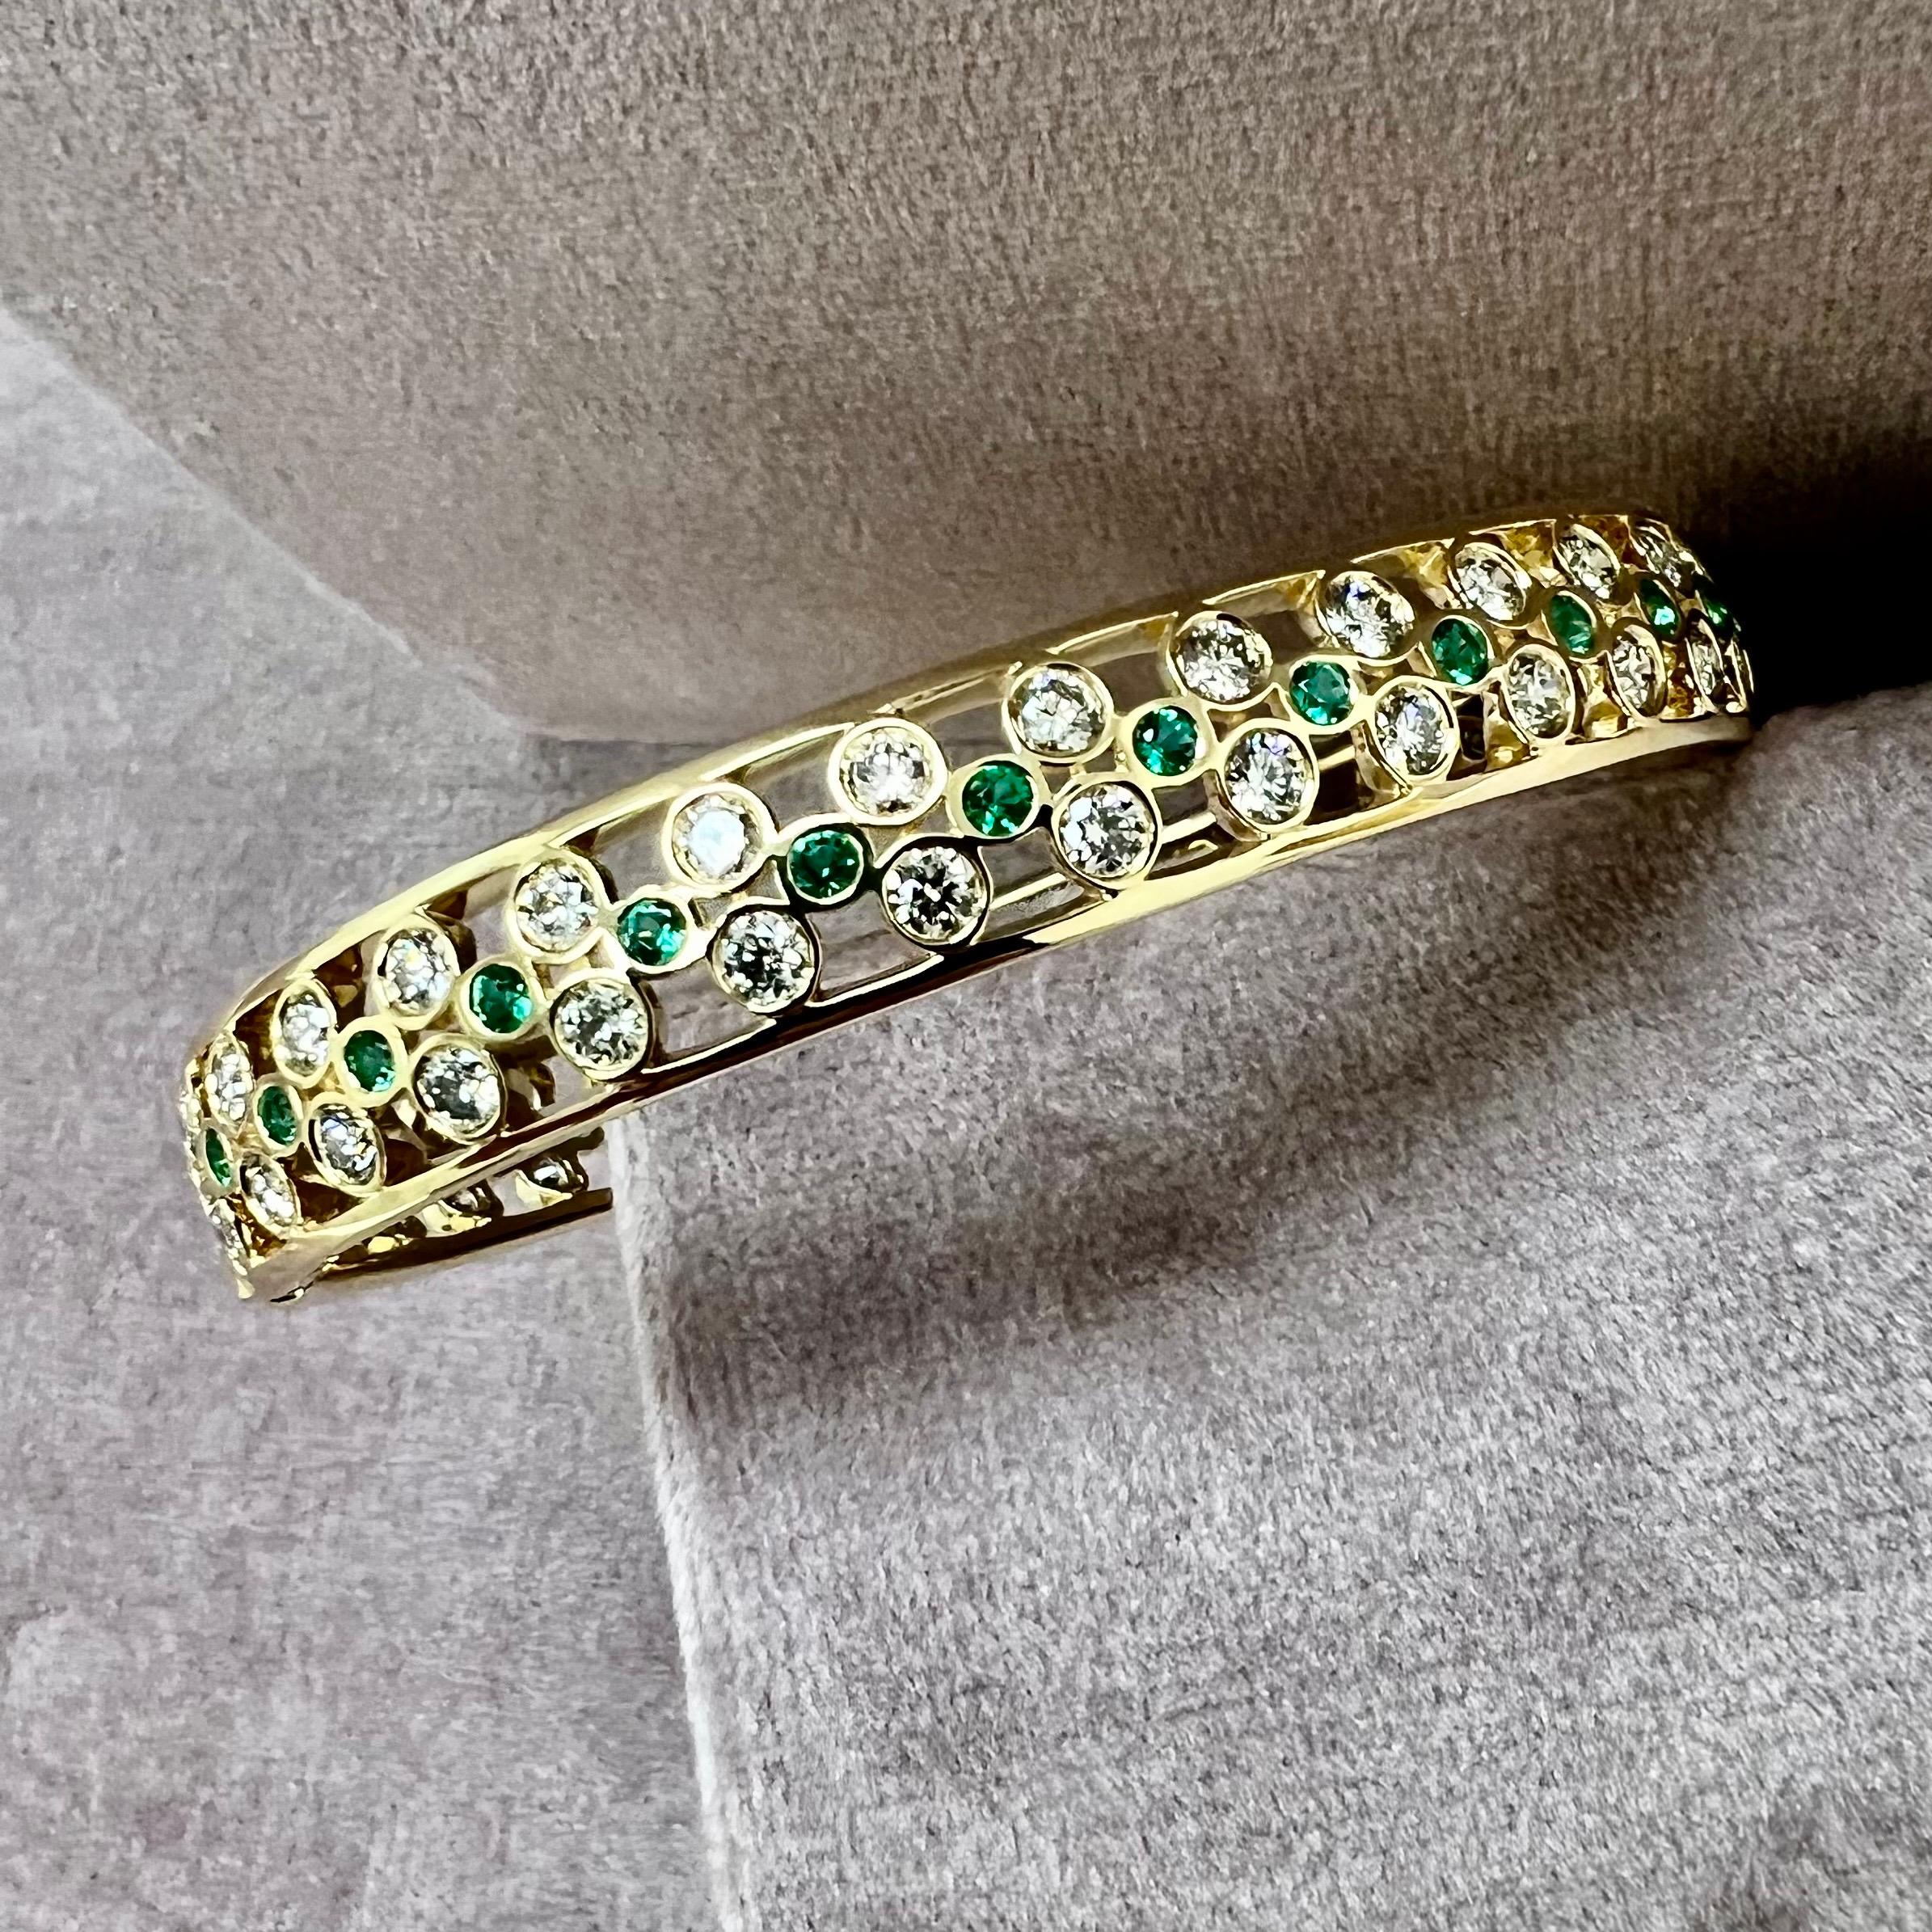 Hergestellt aus 18 Karat Gelbgold
Smaragde ca. 0,90 Karat.
Diamanten ca. 4,40 Karat.
Ovales Armband zum Öffnen


Über die Designer ~ Dharmesh & Namrata

Dharmesh & Namrata Kothari haben sich von kleinen Dingen inspirieren lassen und eine